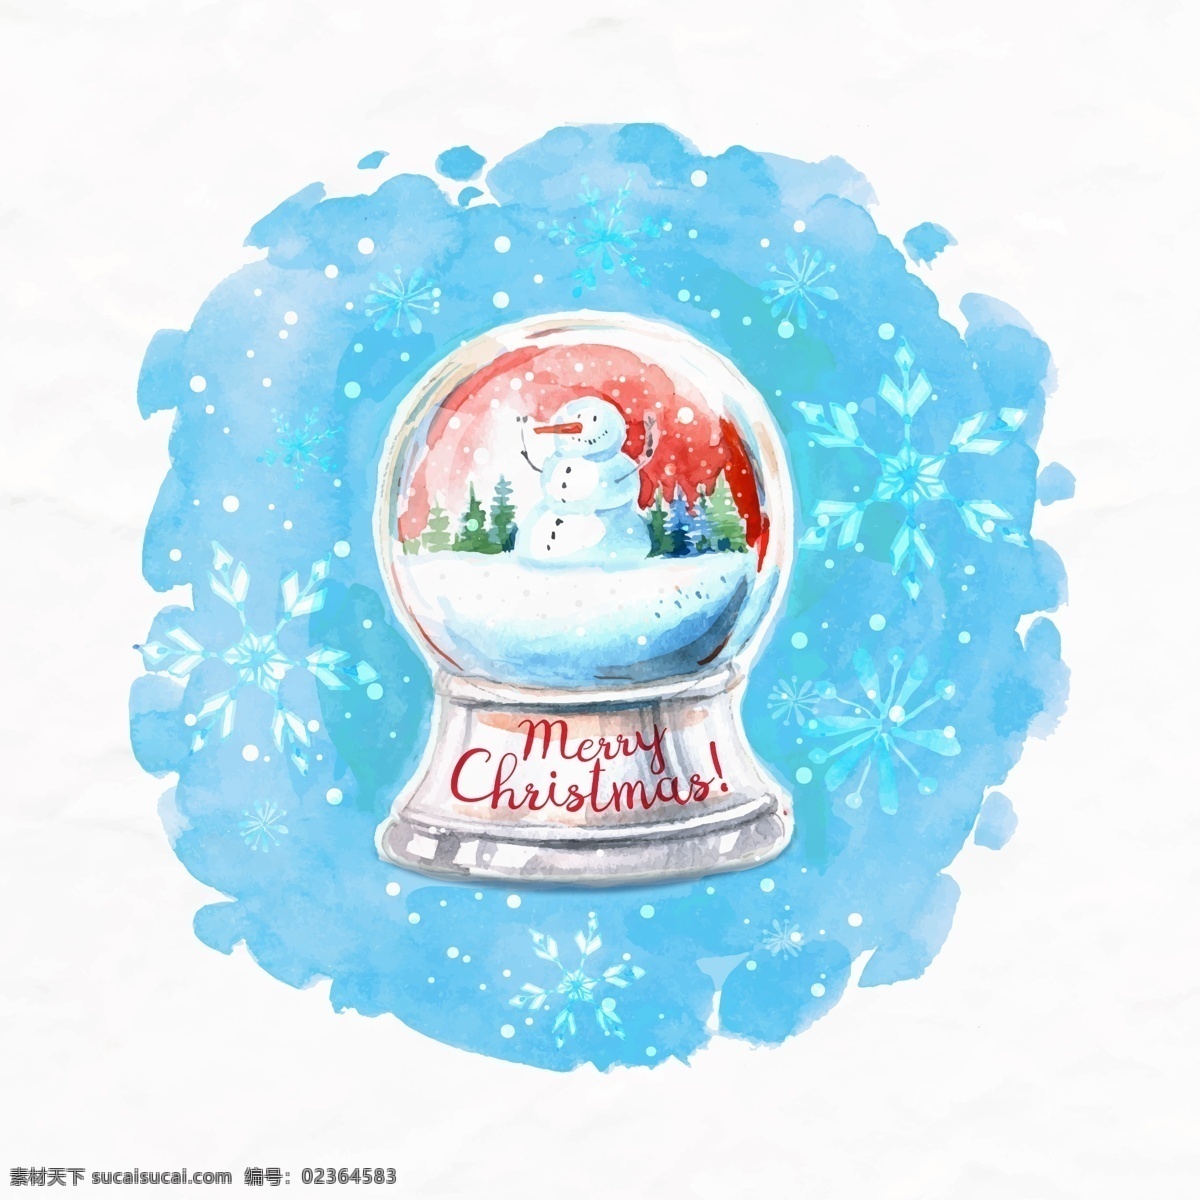 手绘 水彩 圣诞 雪人 水晶球 水粉 圣诞节 圣诞树 圣诞快乐 雪花 文化 传统 复活 感恩 万圣节 文化艺术 传统文化